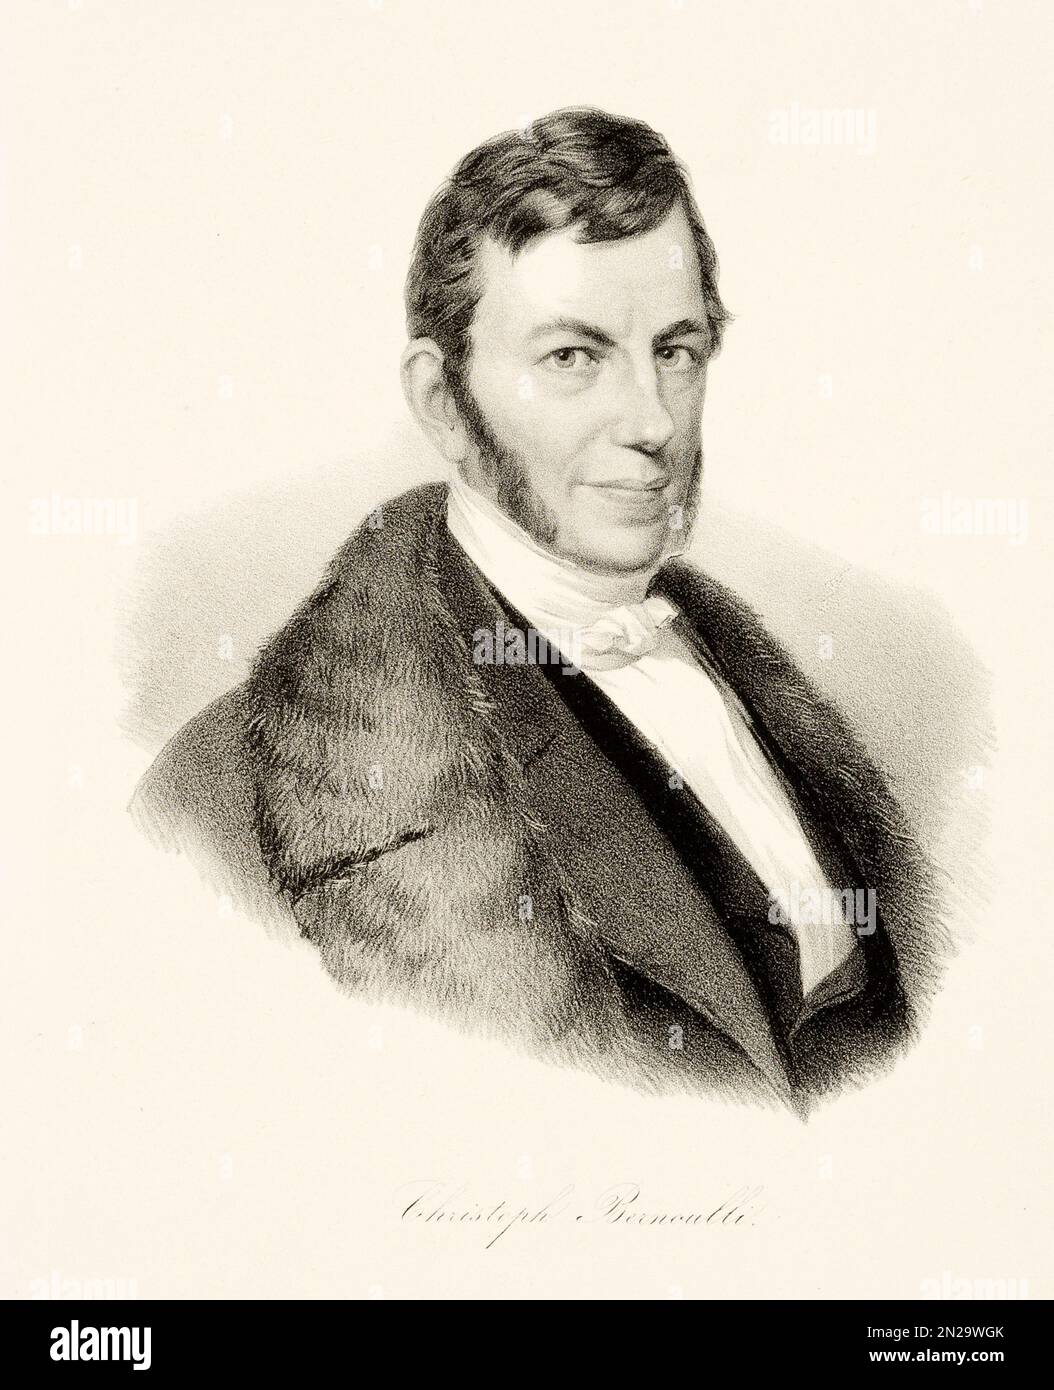 1820 ca , Basilea , SVIZZERA : Ritratto dell'economista svizzero, naturalista, fisico, avvocato e filosofo CHRISTOPH BERNOULLI ( 1782 - 1863 ) . Incisione di Biedermeier , XIX secolo . - STORIA - FOTO STORICHE - SCIENZIATO - SCIENZIATO - RITRATTO - SVIZZERA - DIRITTO - LENTE - AVVOCATO - DOTTORE - MEDICO - MEDICINA - MEDICINA - SCIENZA - FILOSOFIA - FILOSOFO - FILOSOFA - FILOSOFIA - SCIENZE NATURALI - NATULISTA --- ARCHIVIO GBB Foto Stock